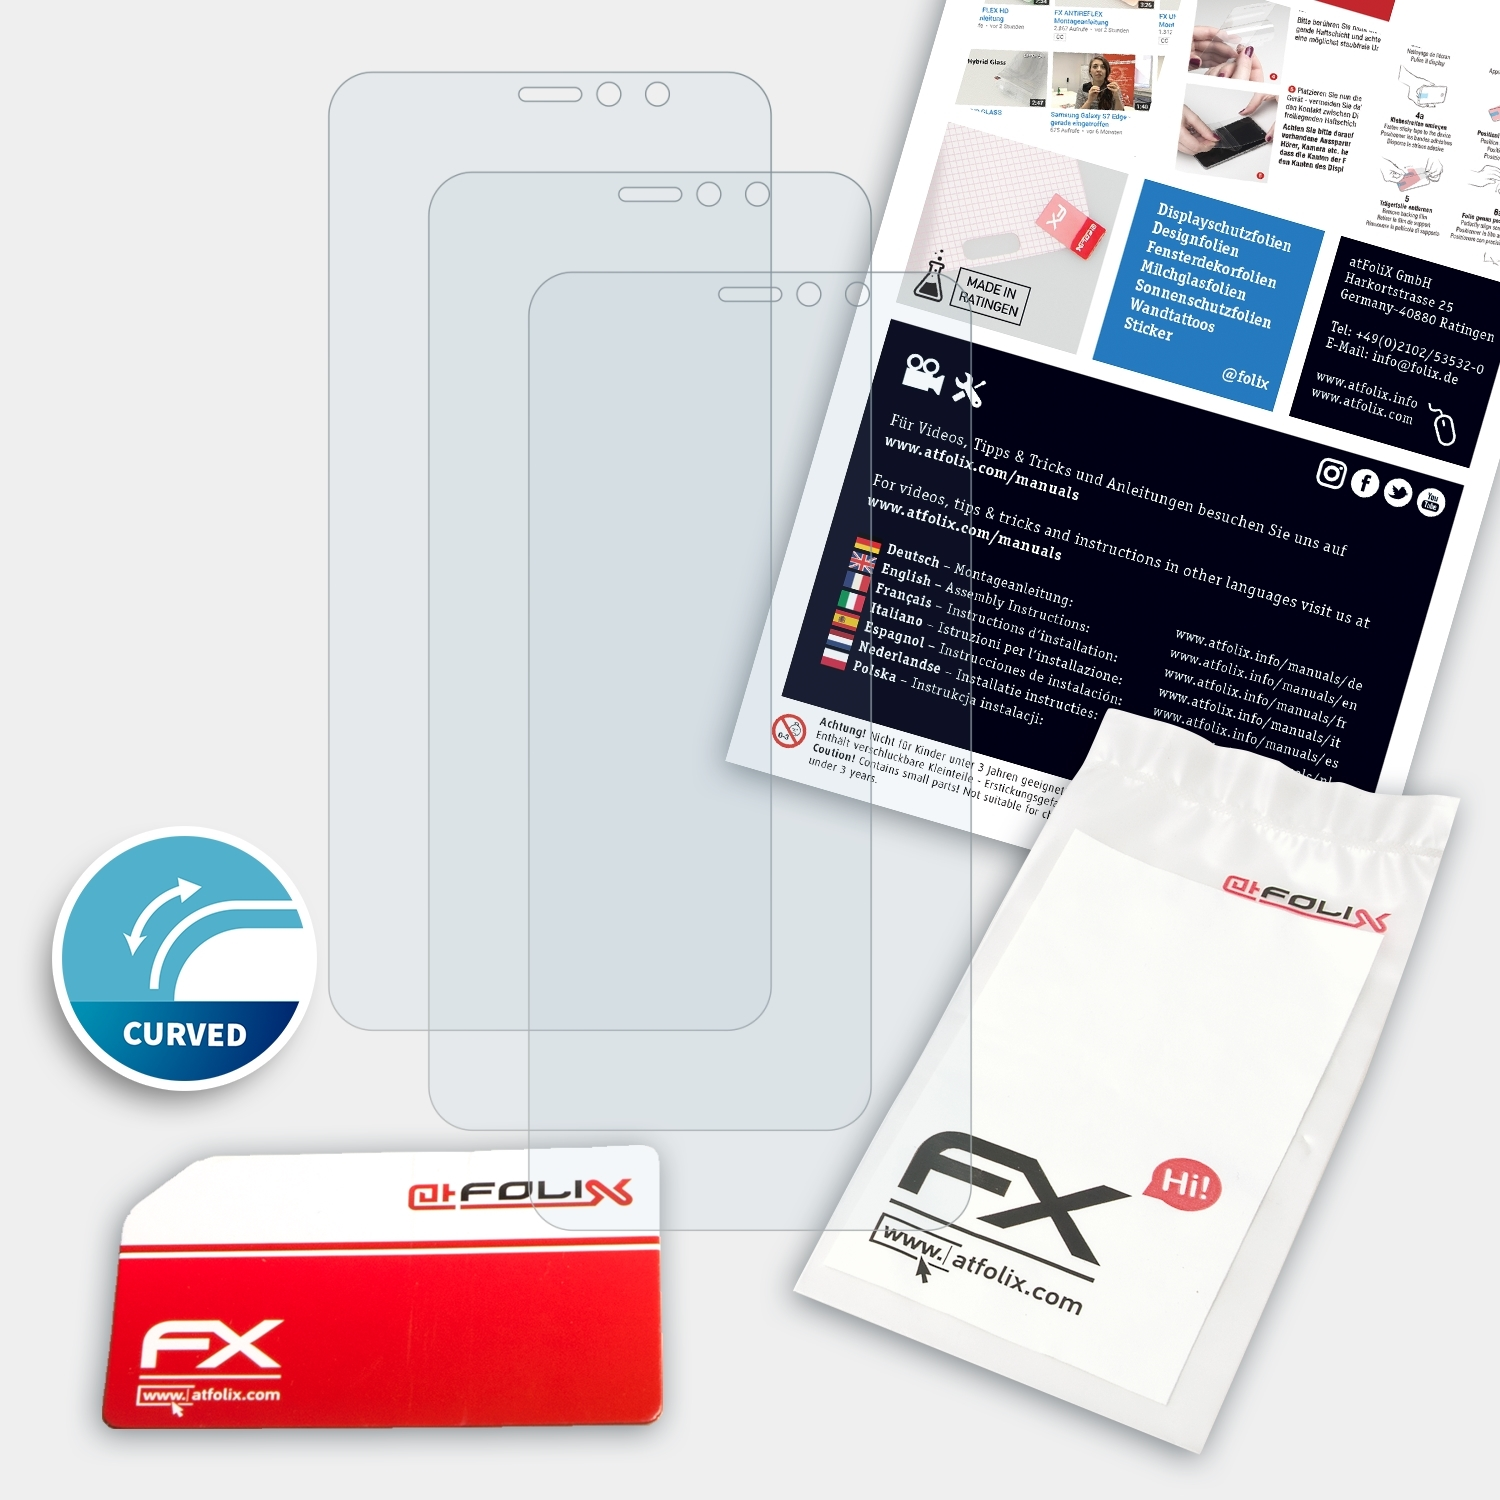 U11 EYEs) FX-ActiFleX HTC ATFOLIX Displayschutz(für 3x